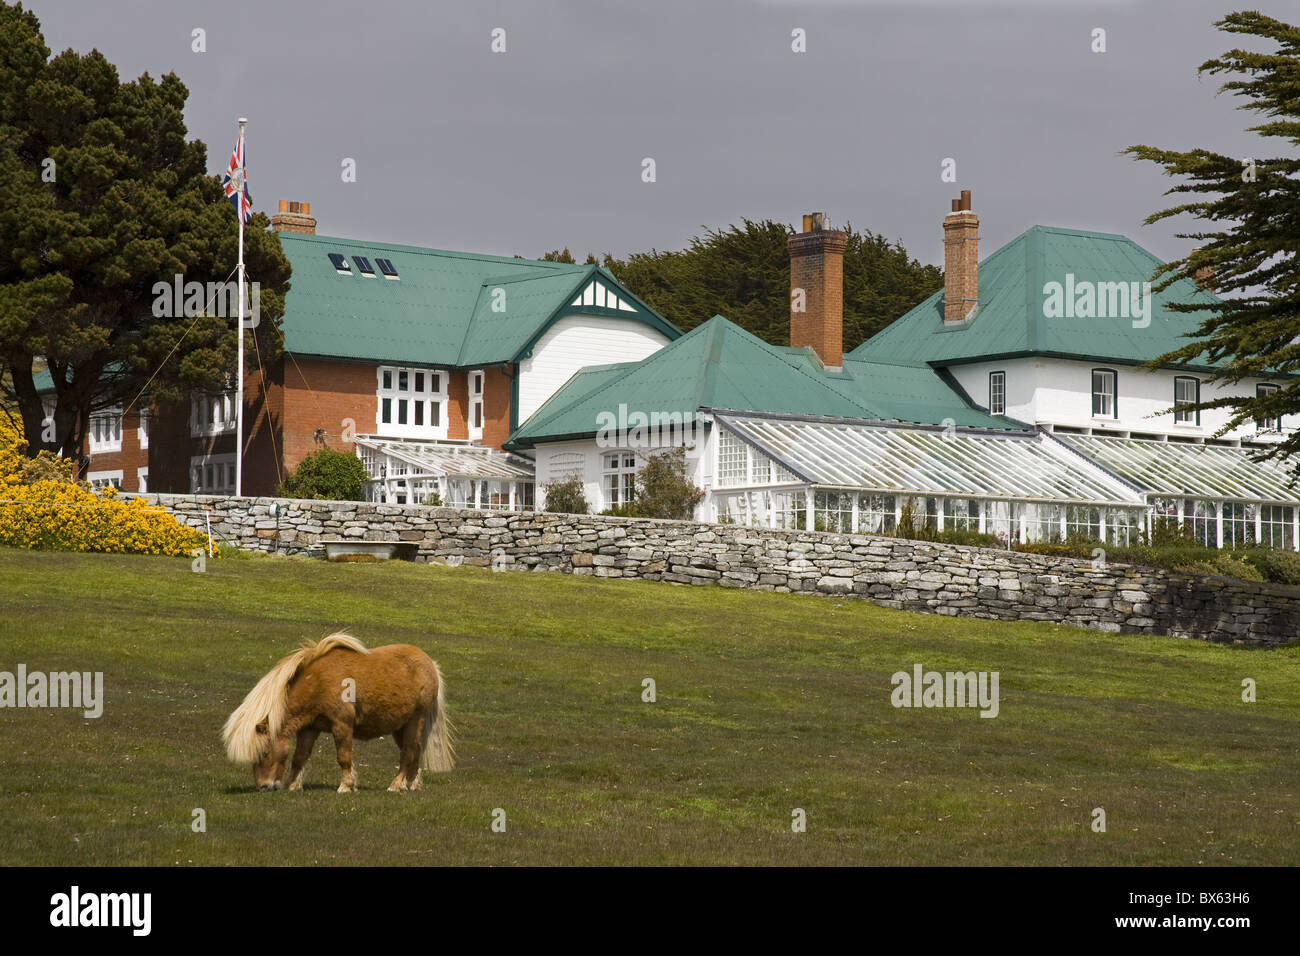 Cheval et Goverment House à Port Stanley, îles Falkland (Malouines), l'Amérique du Sud Banque D'Images